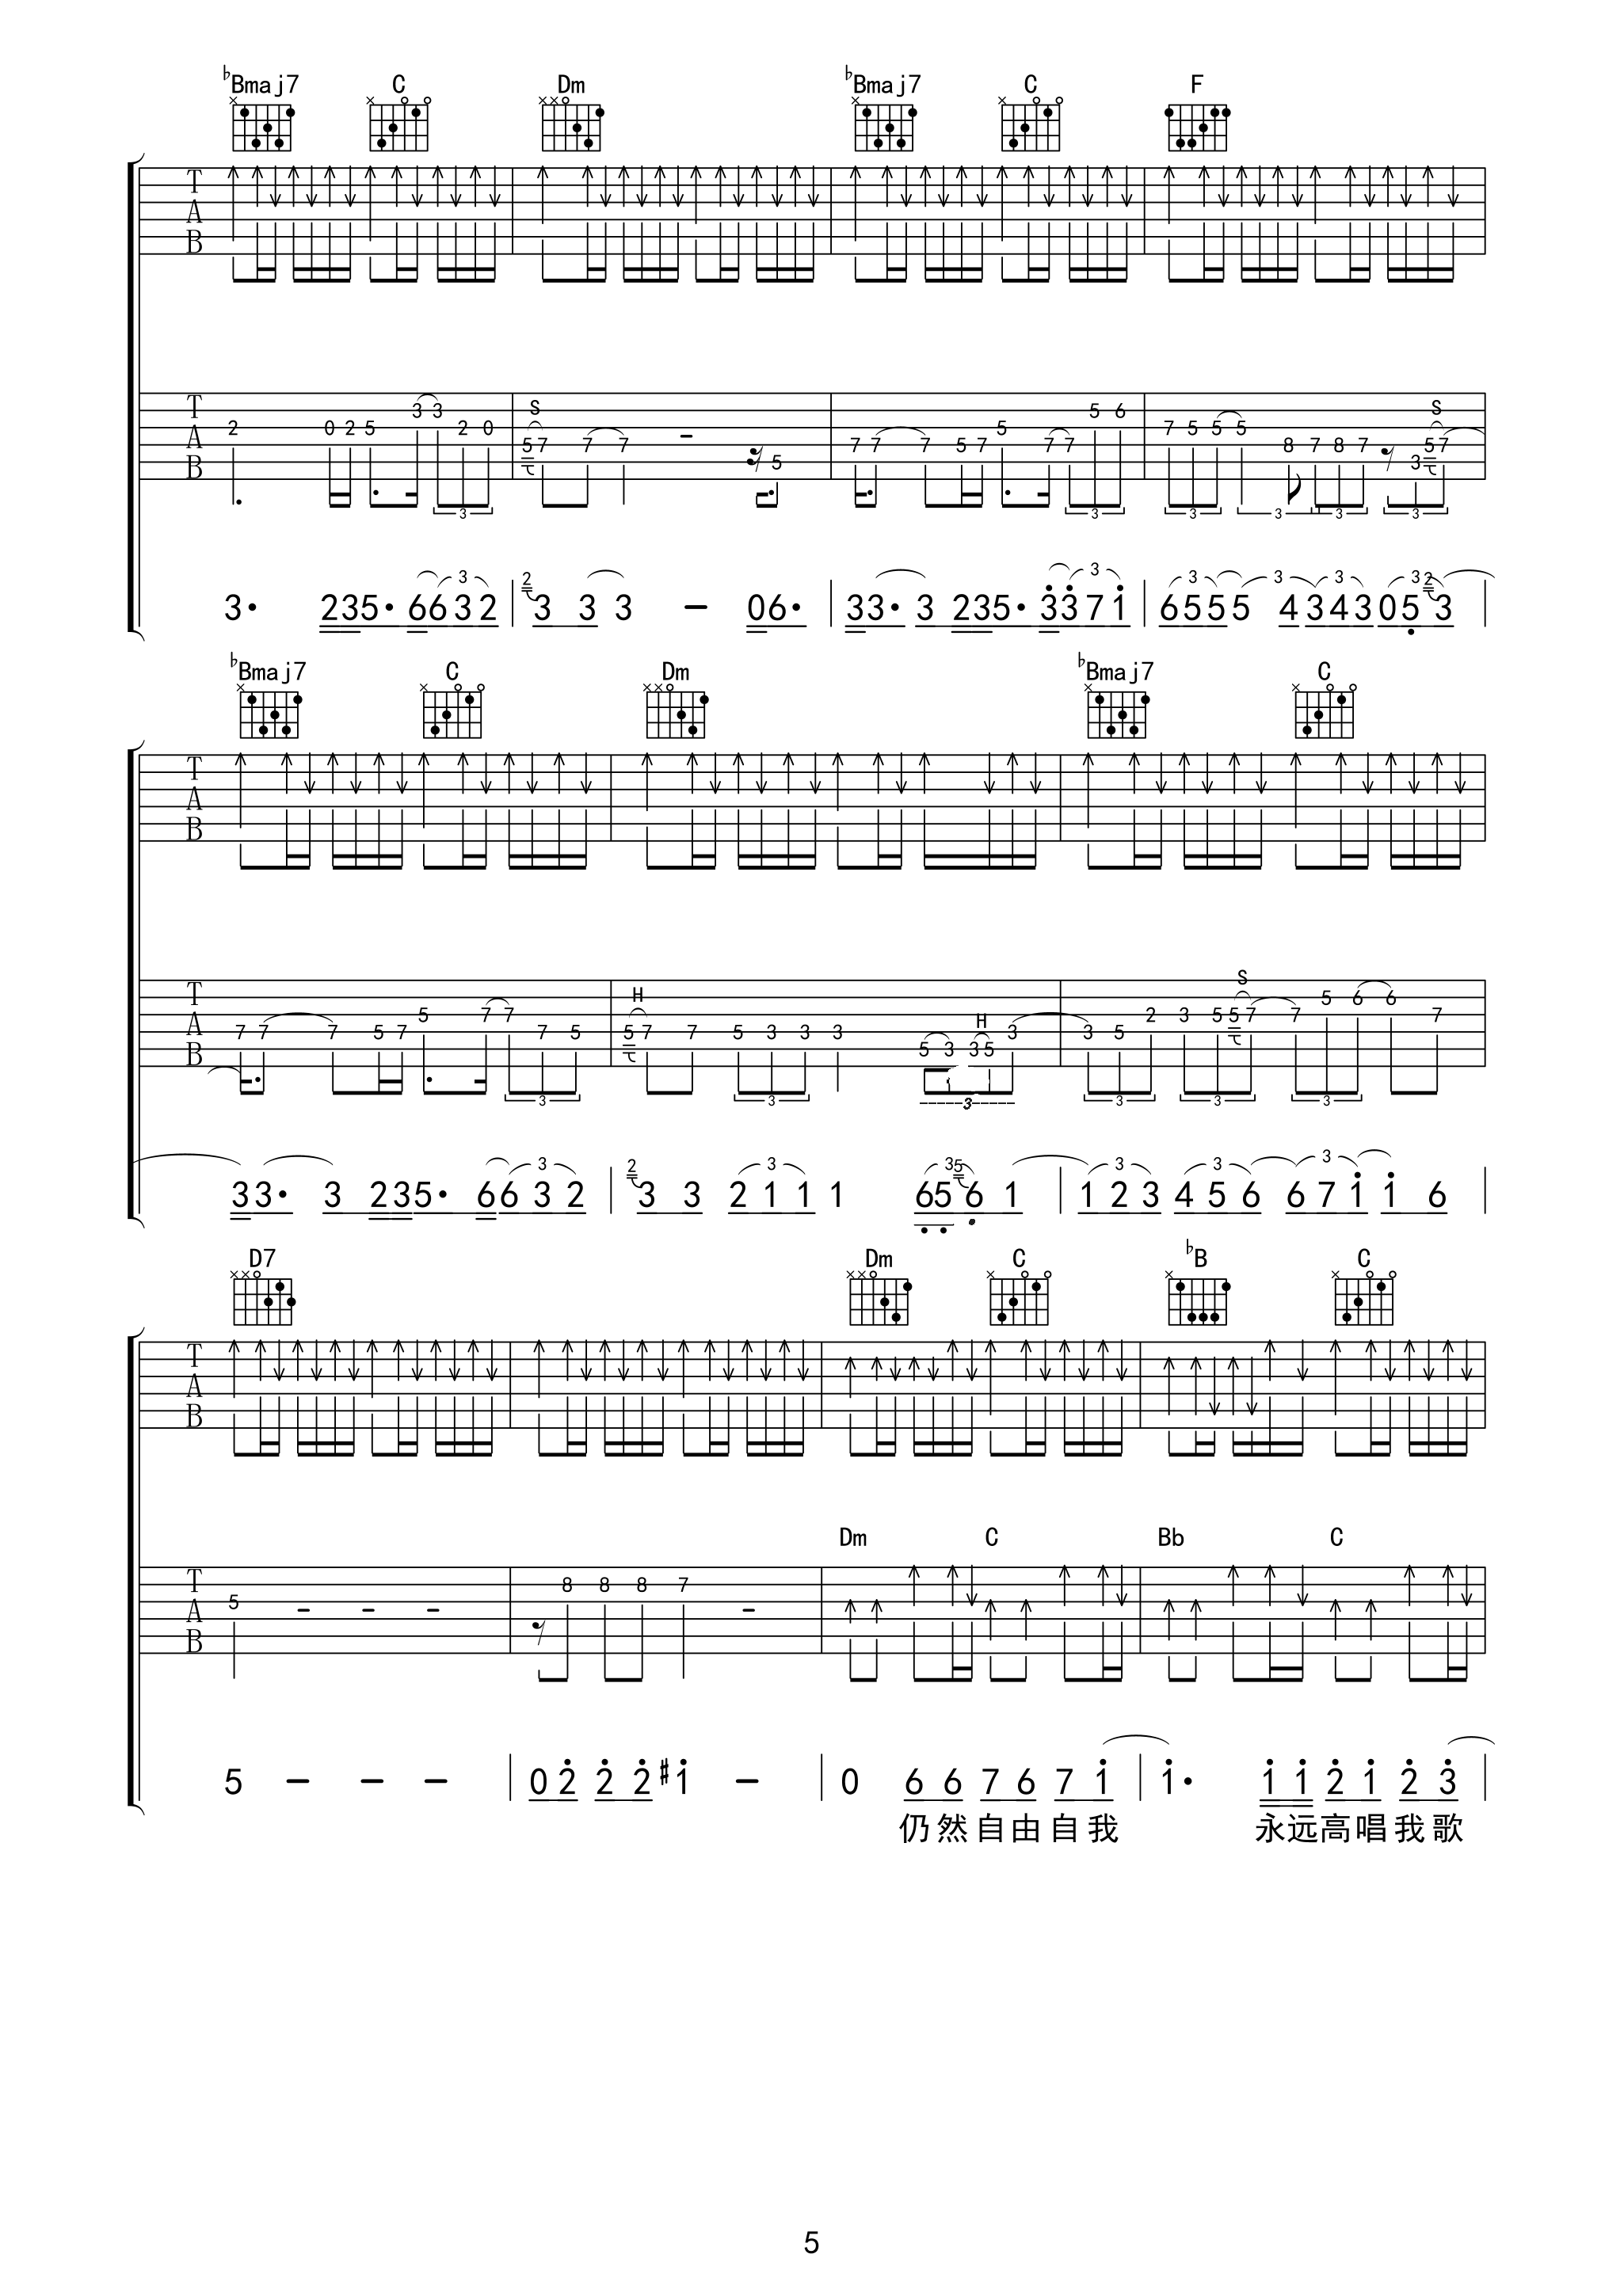 海阔天空吉他谱93版不插电弦心距出品吉他谱第(5)页